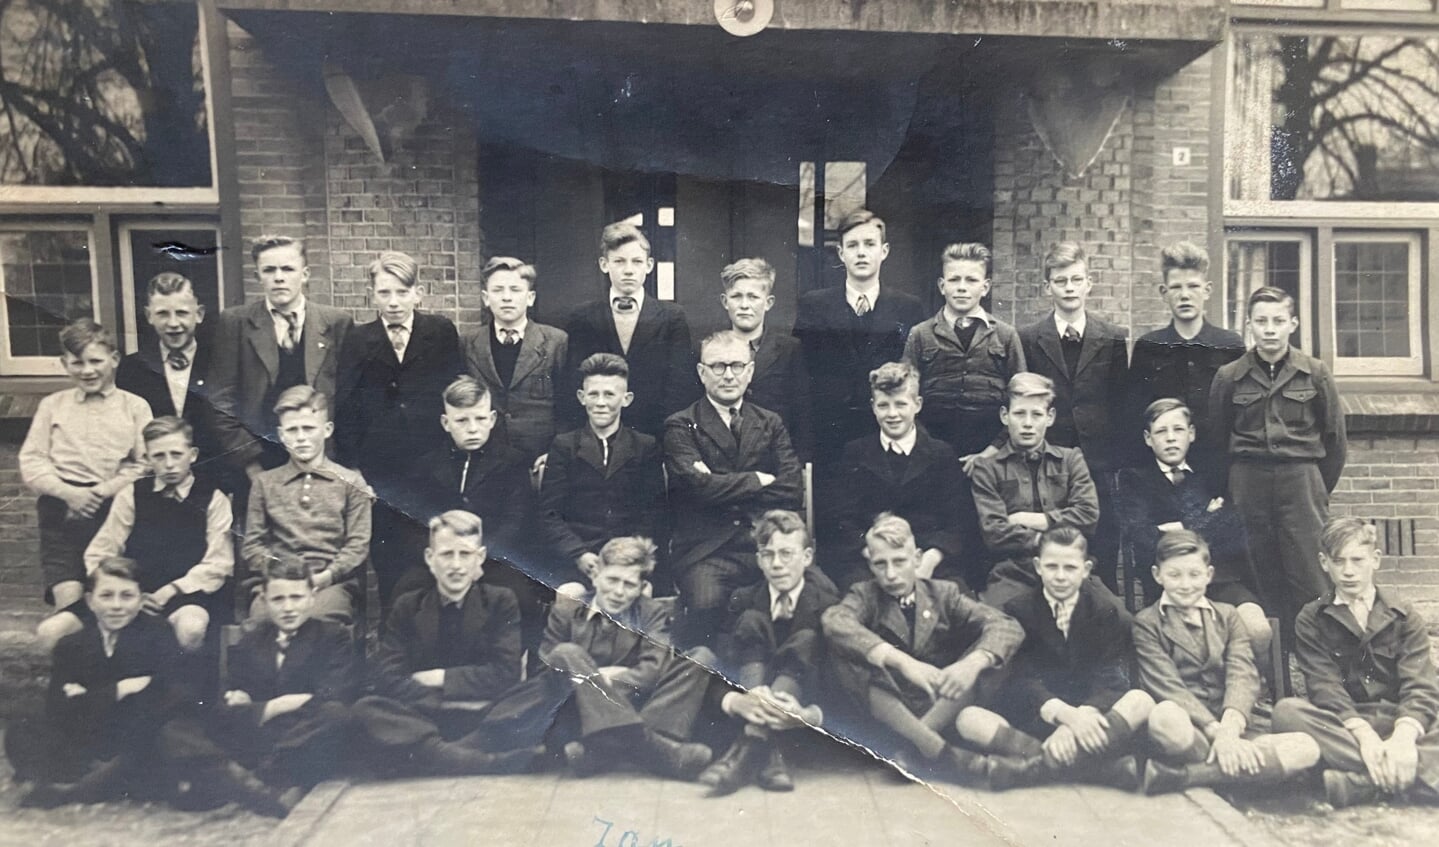 Bredevoort leerlingen van de Landbouwschool, circa 1946 - 1947. Foto: met dank aan mevrouw Eppink